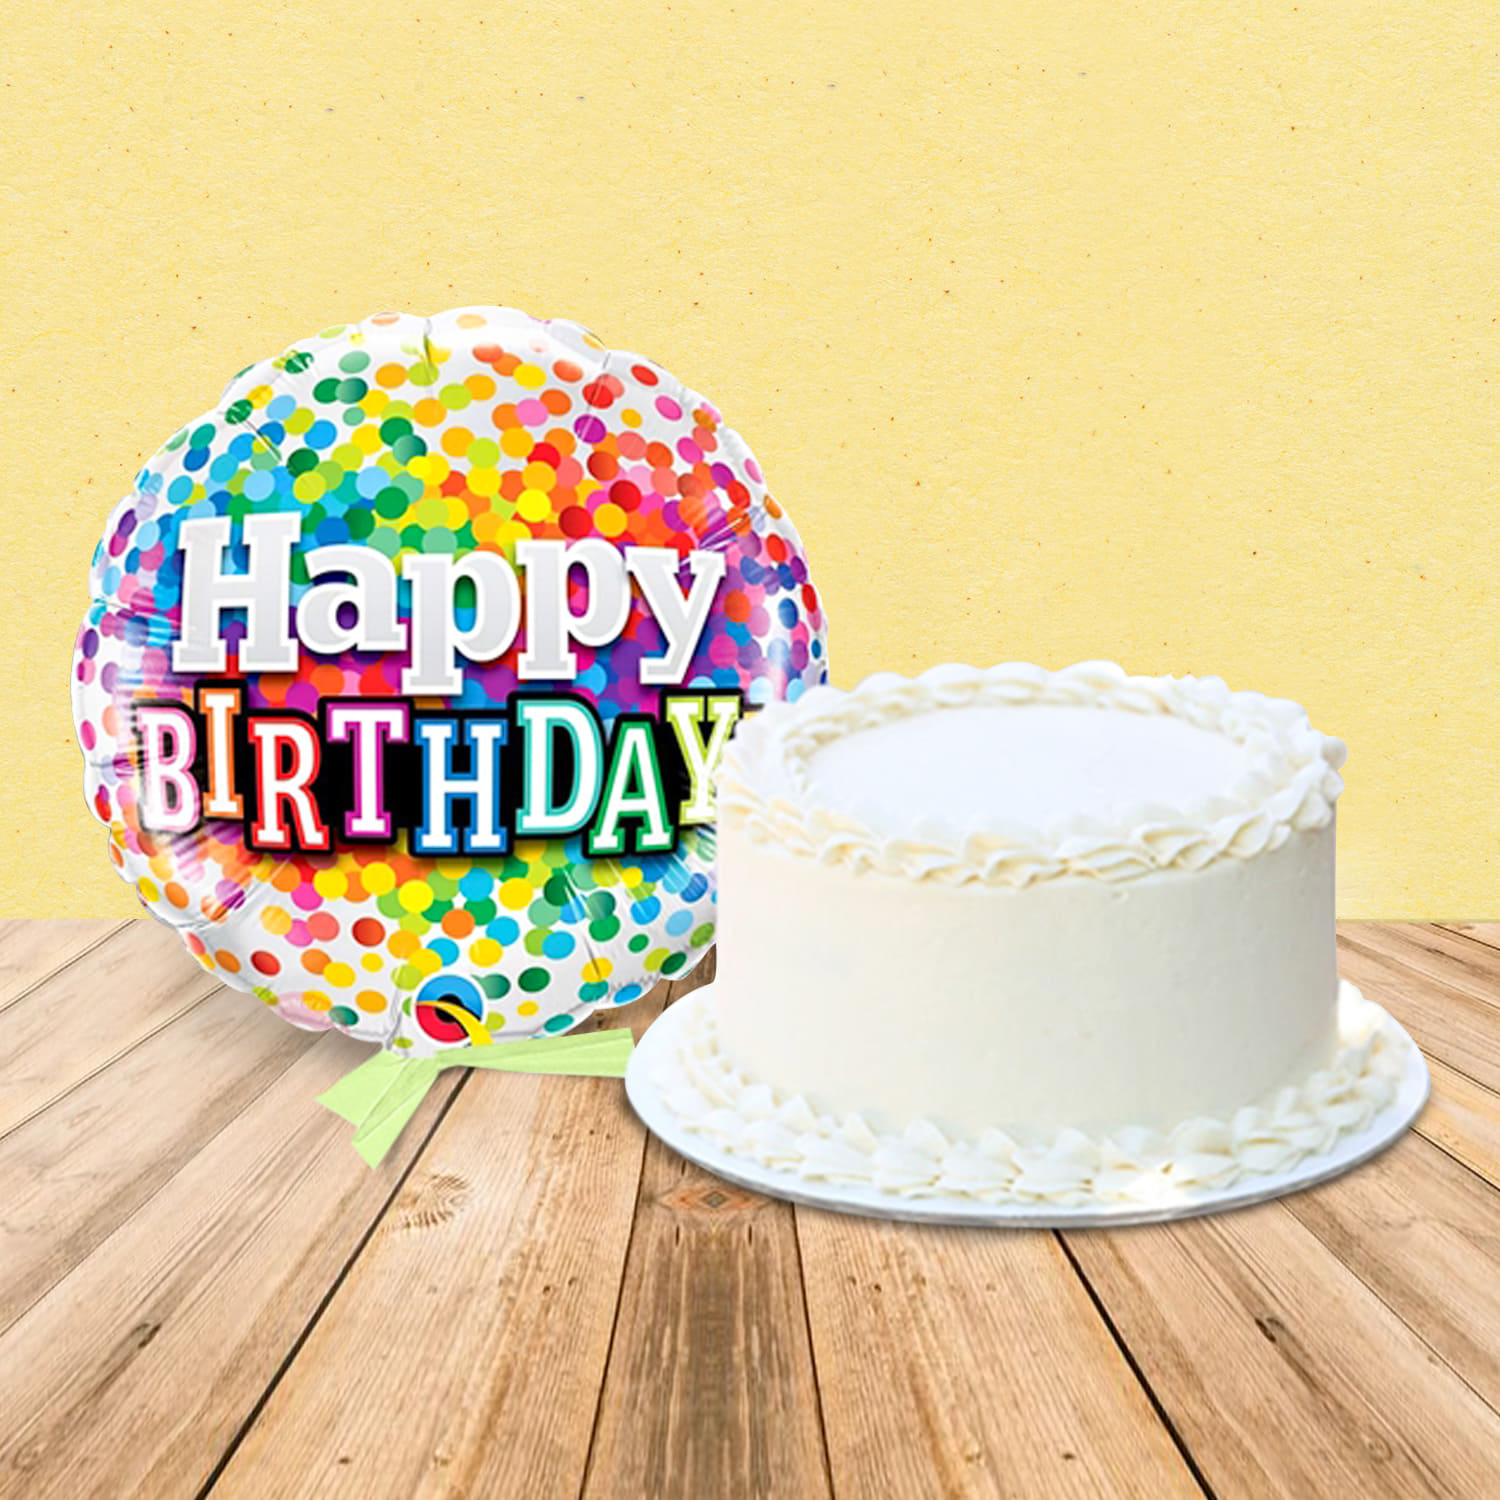 10 Amazing Chocolate Birthday Cake Decorating Ideas | So Yummy Chocolate  Cake Compilation - YouTube